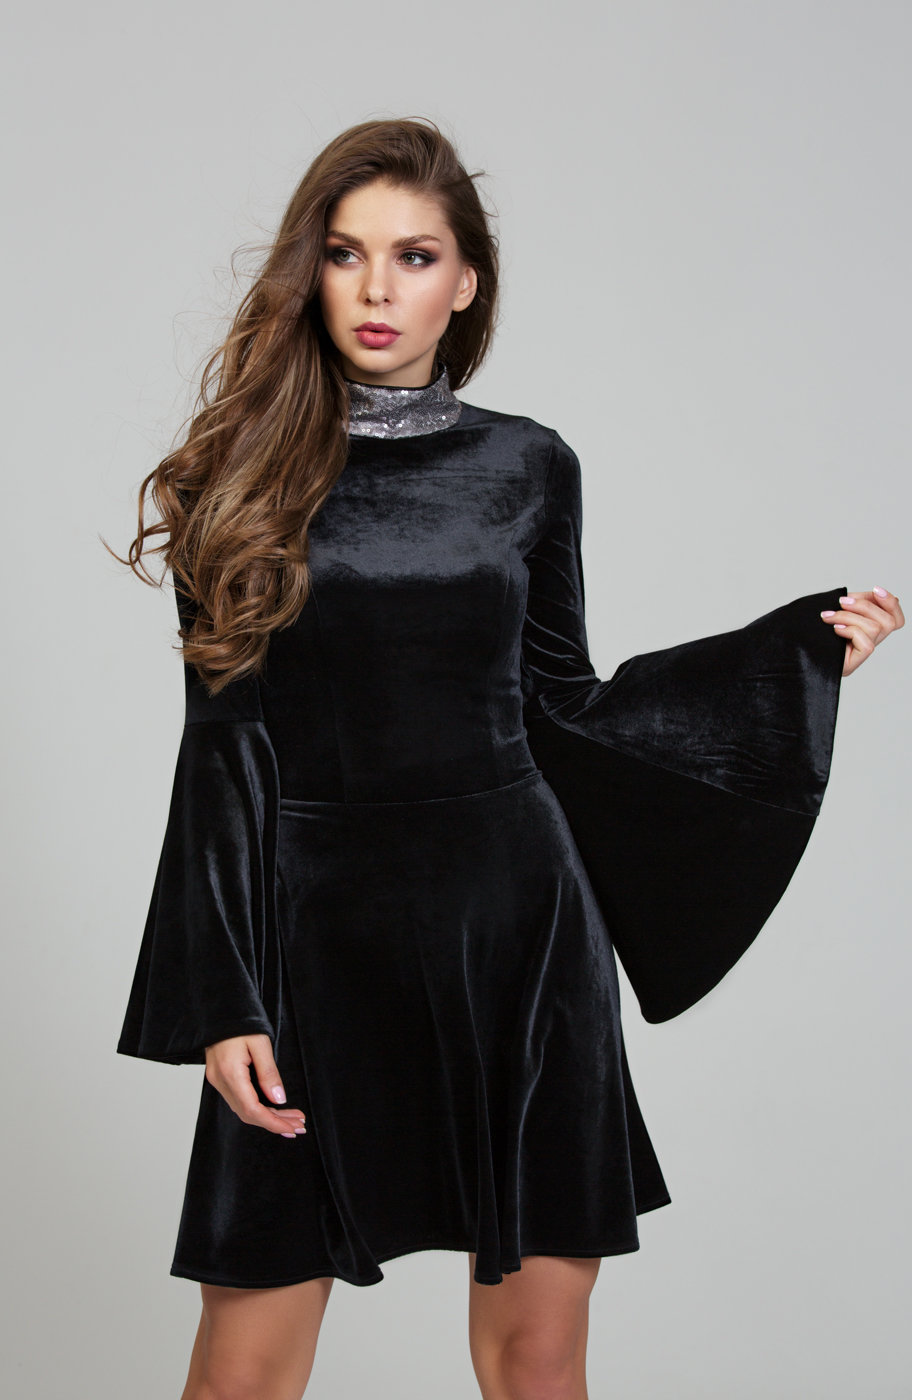 Нарядное черное платье из волшебного бархата DSP-303-4t купить в интернет-магазине latrendo.ru